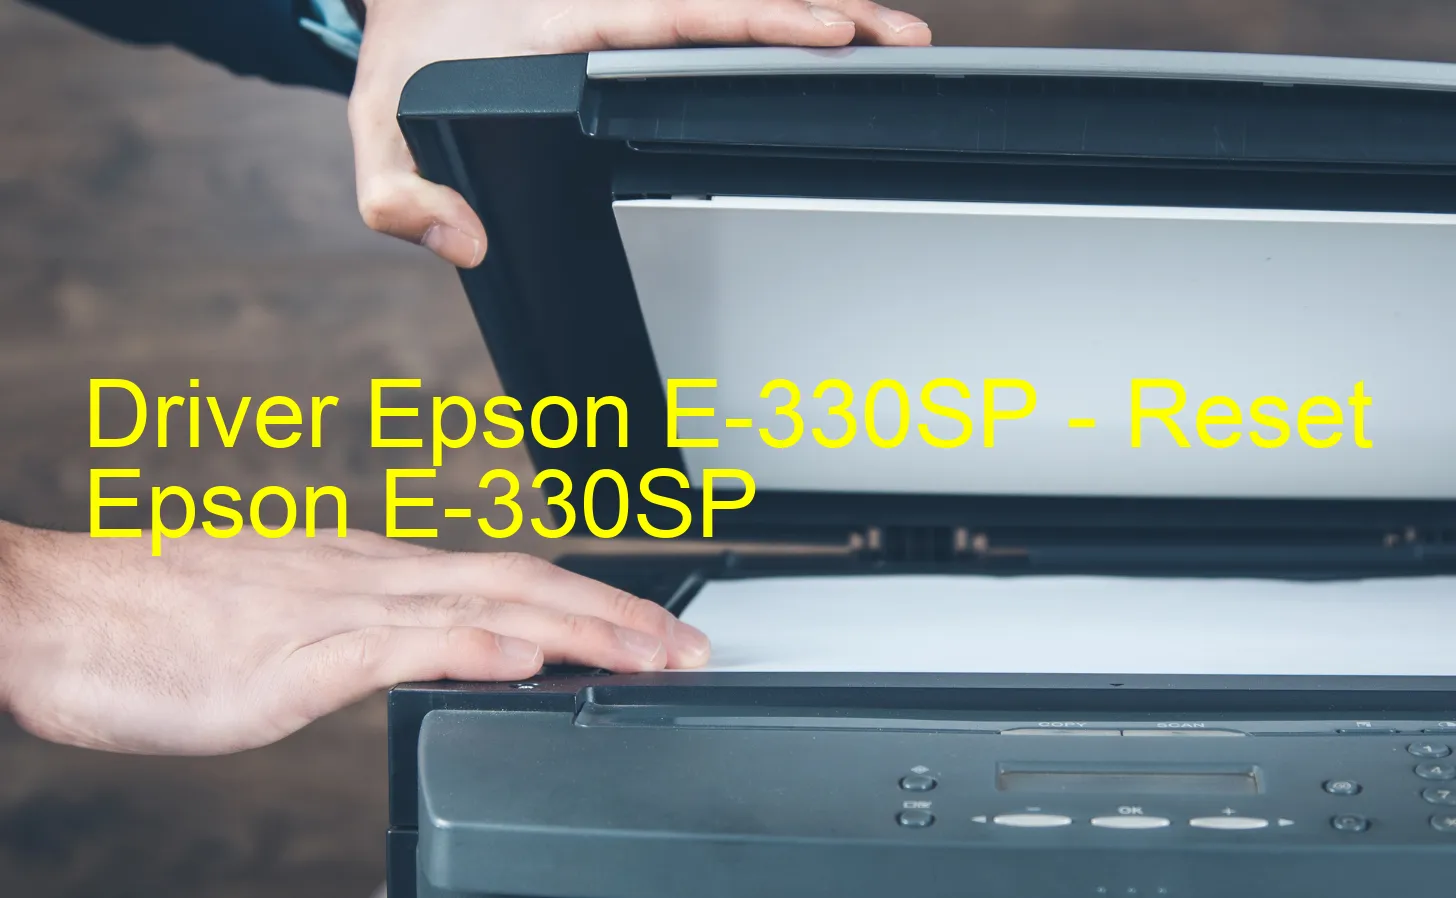 Epson E-330SPのドライバー、Epson E-330SPのリセットソフトウェア